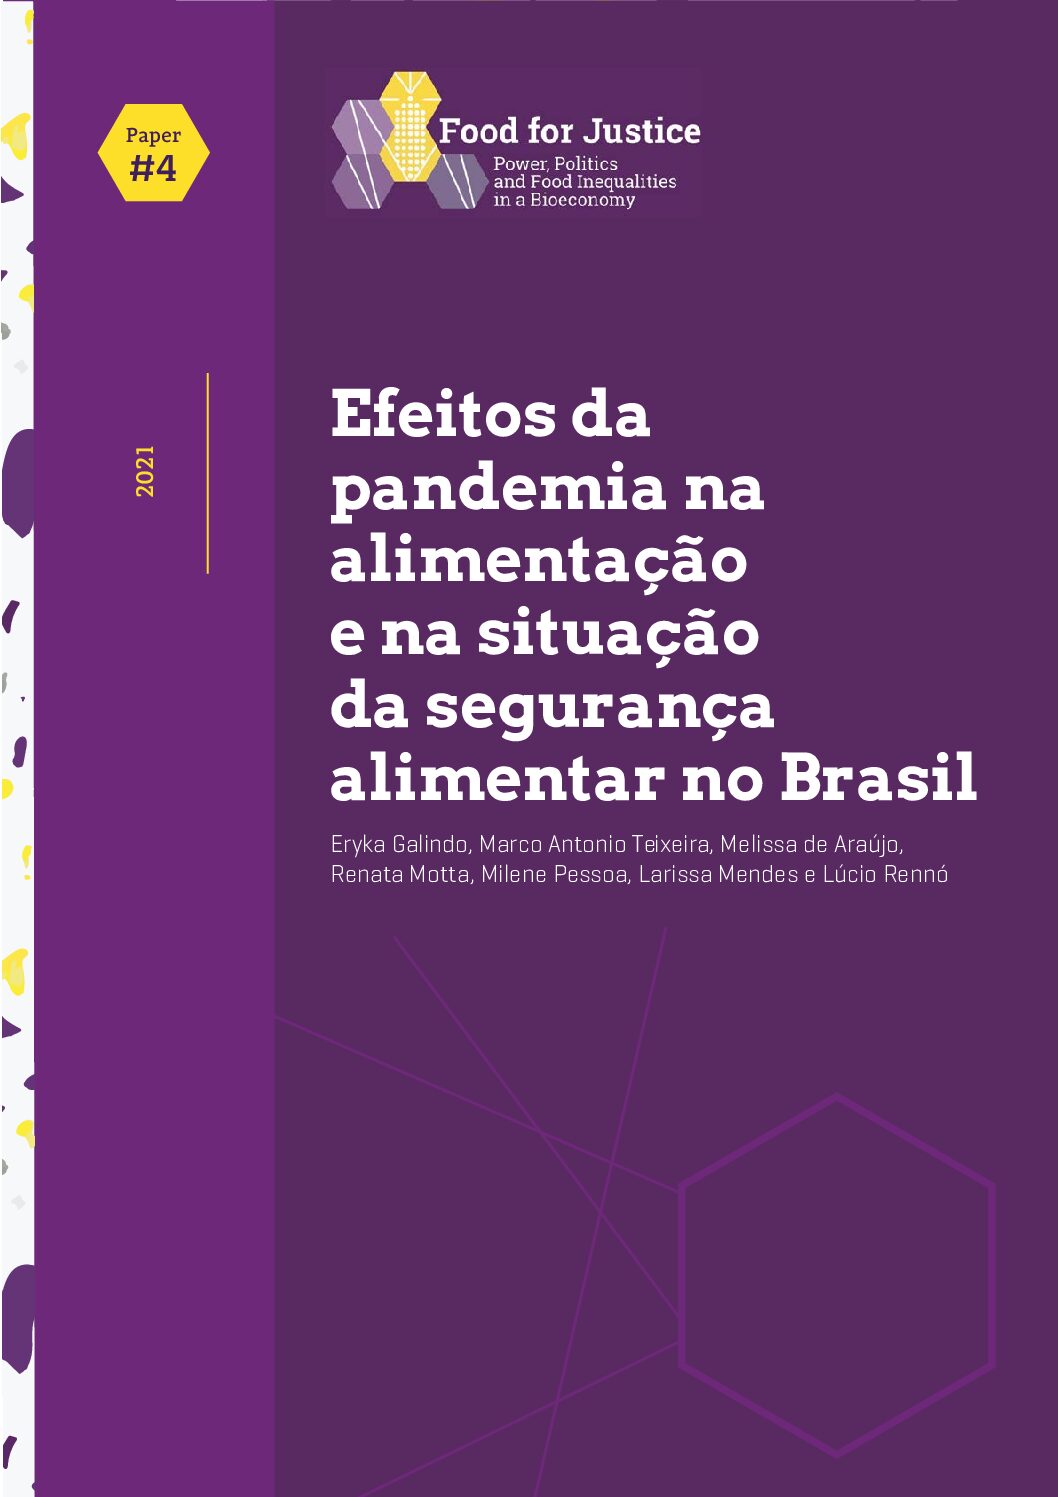 Efeitos da pandemia na alimentação e na situação da segurança alimentar no Brasil